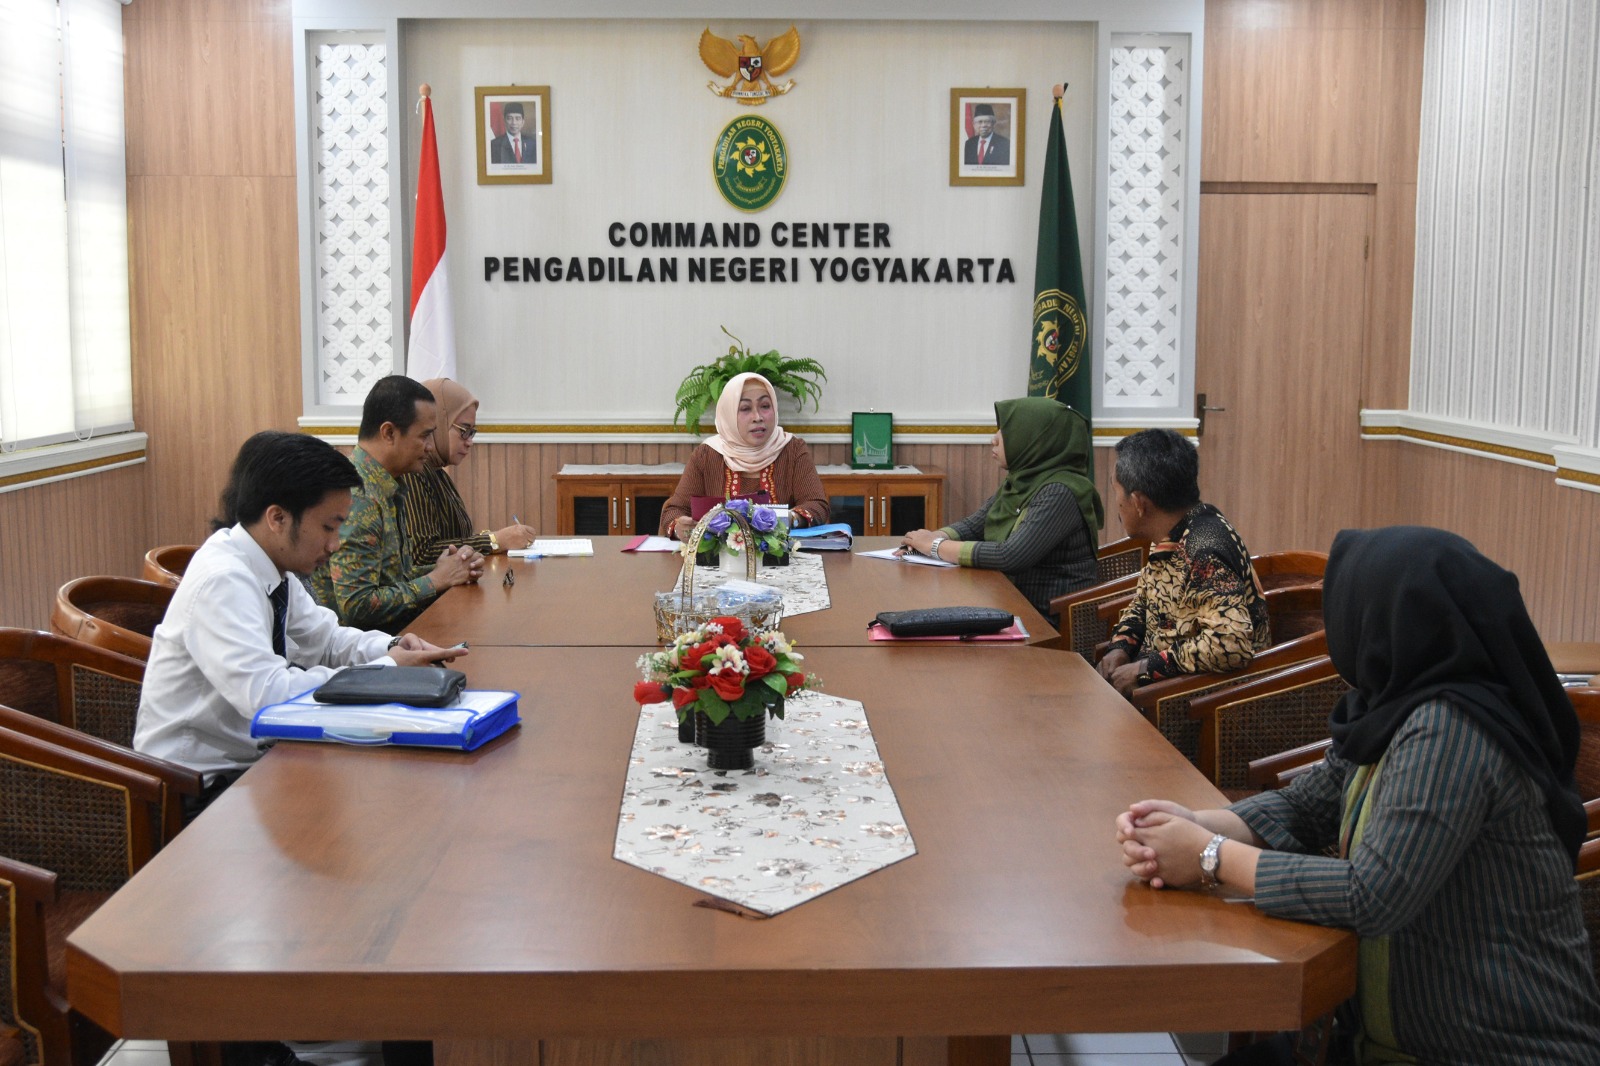 Pelaksanaan Eksekusi Perkara Perdata secara Sukarela Pengadilan Negeri Yogyakarta